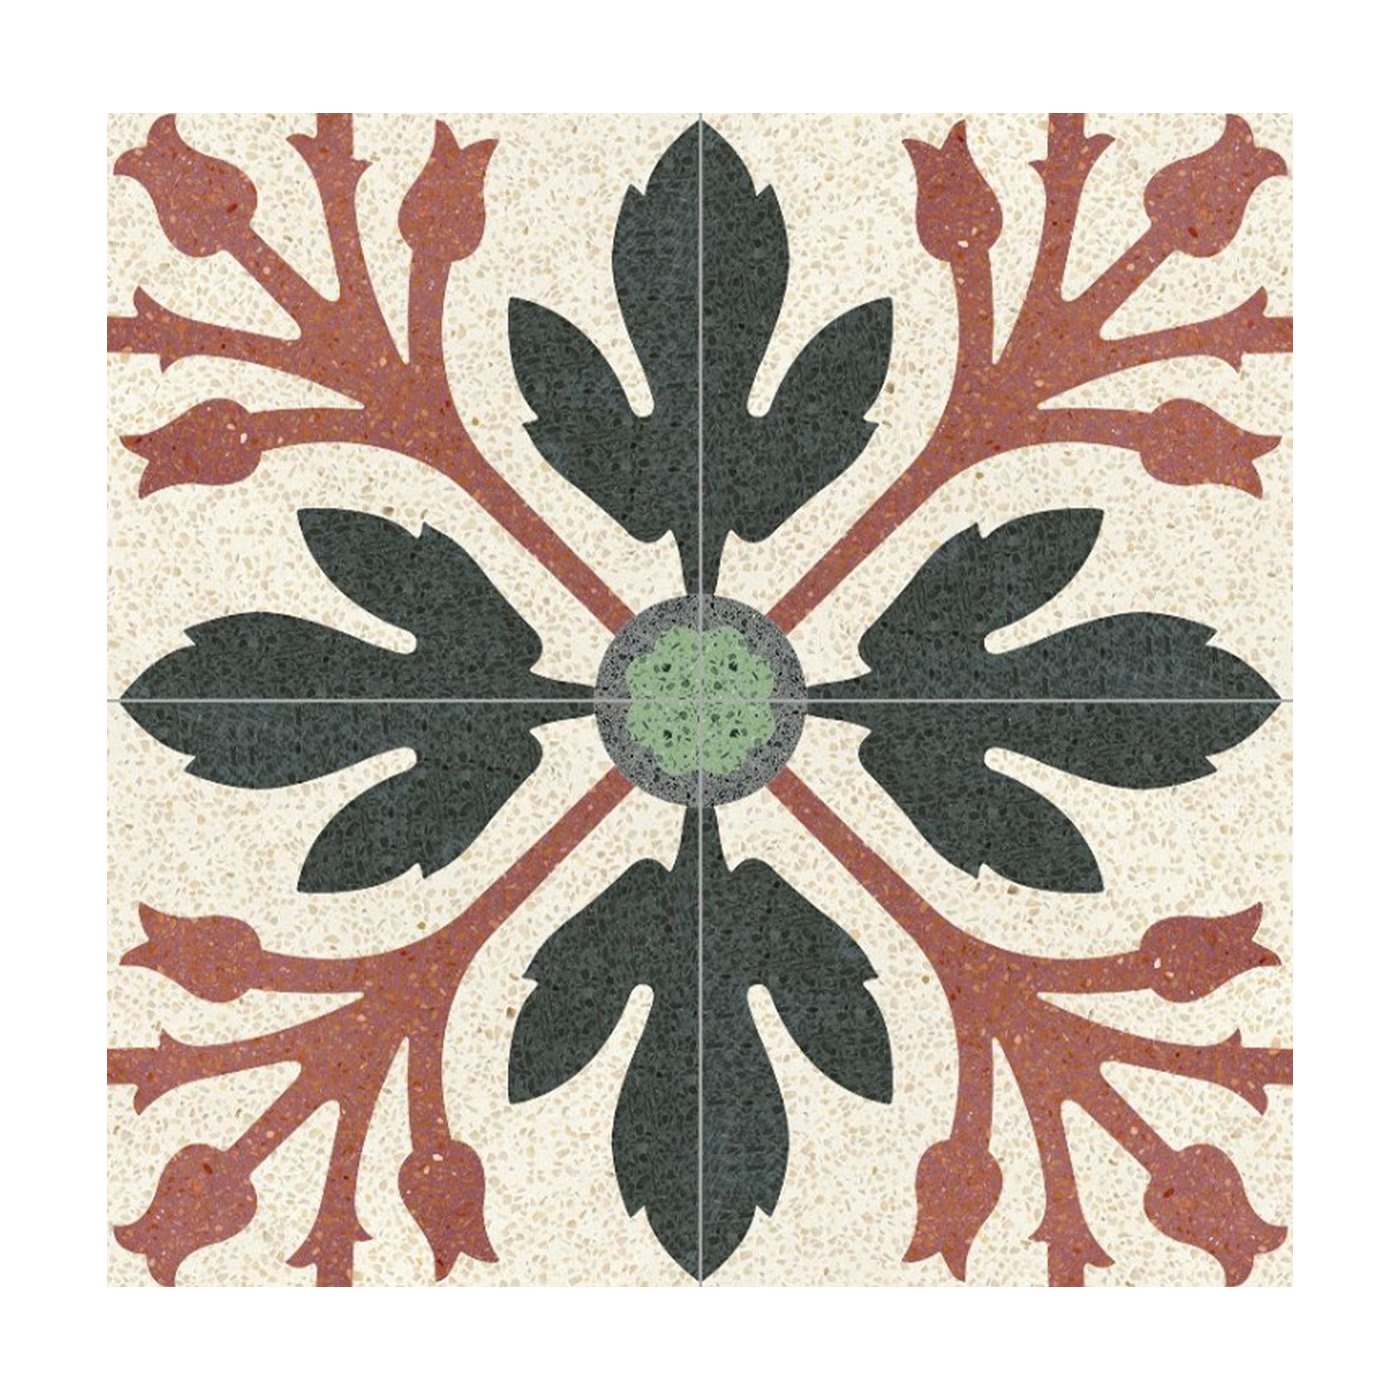 Flores Set of 13 Terrazzo Tiles - Romano